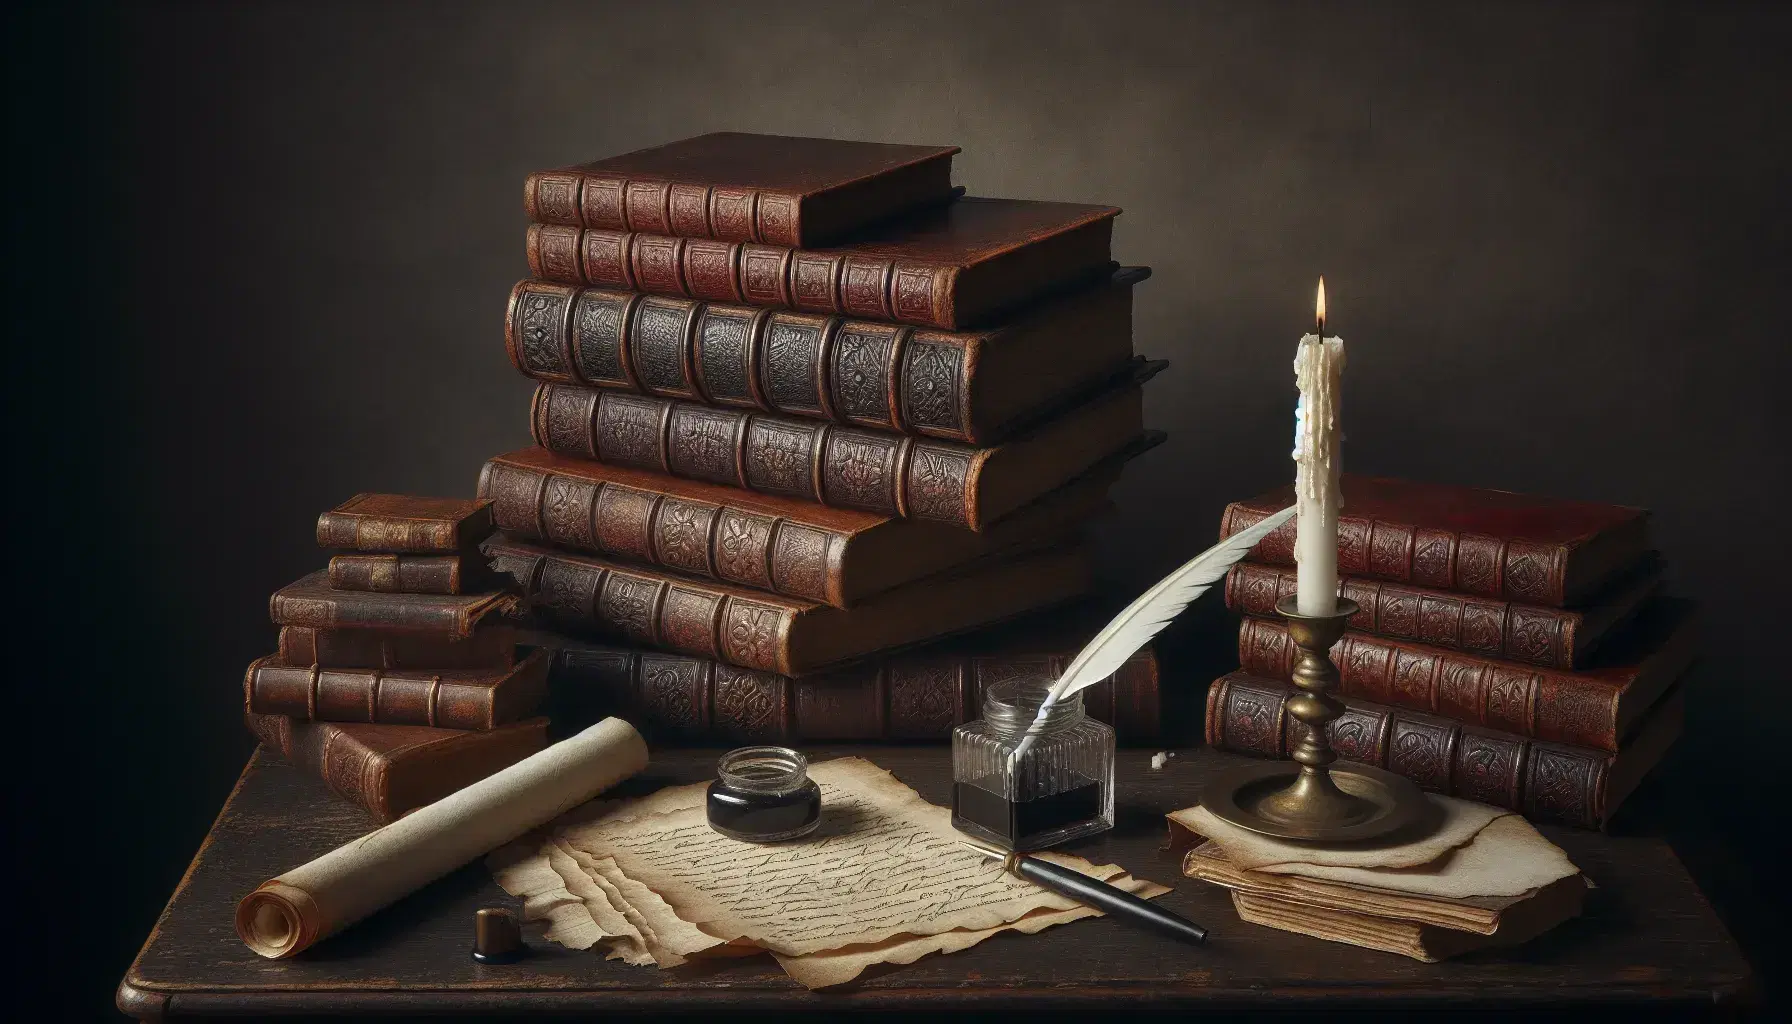 Scrivania antica in legno scuro con libri rilegati in pelle, calamaio con penna d'oca, candela e rotolo di pergamena.